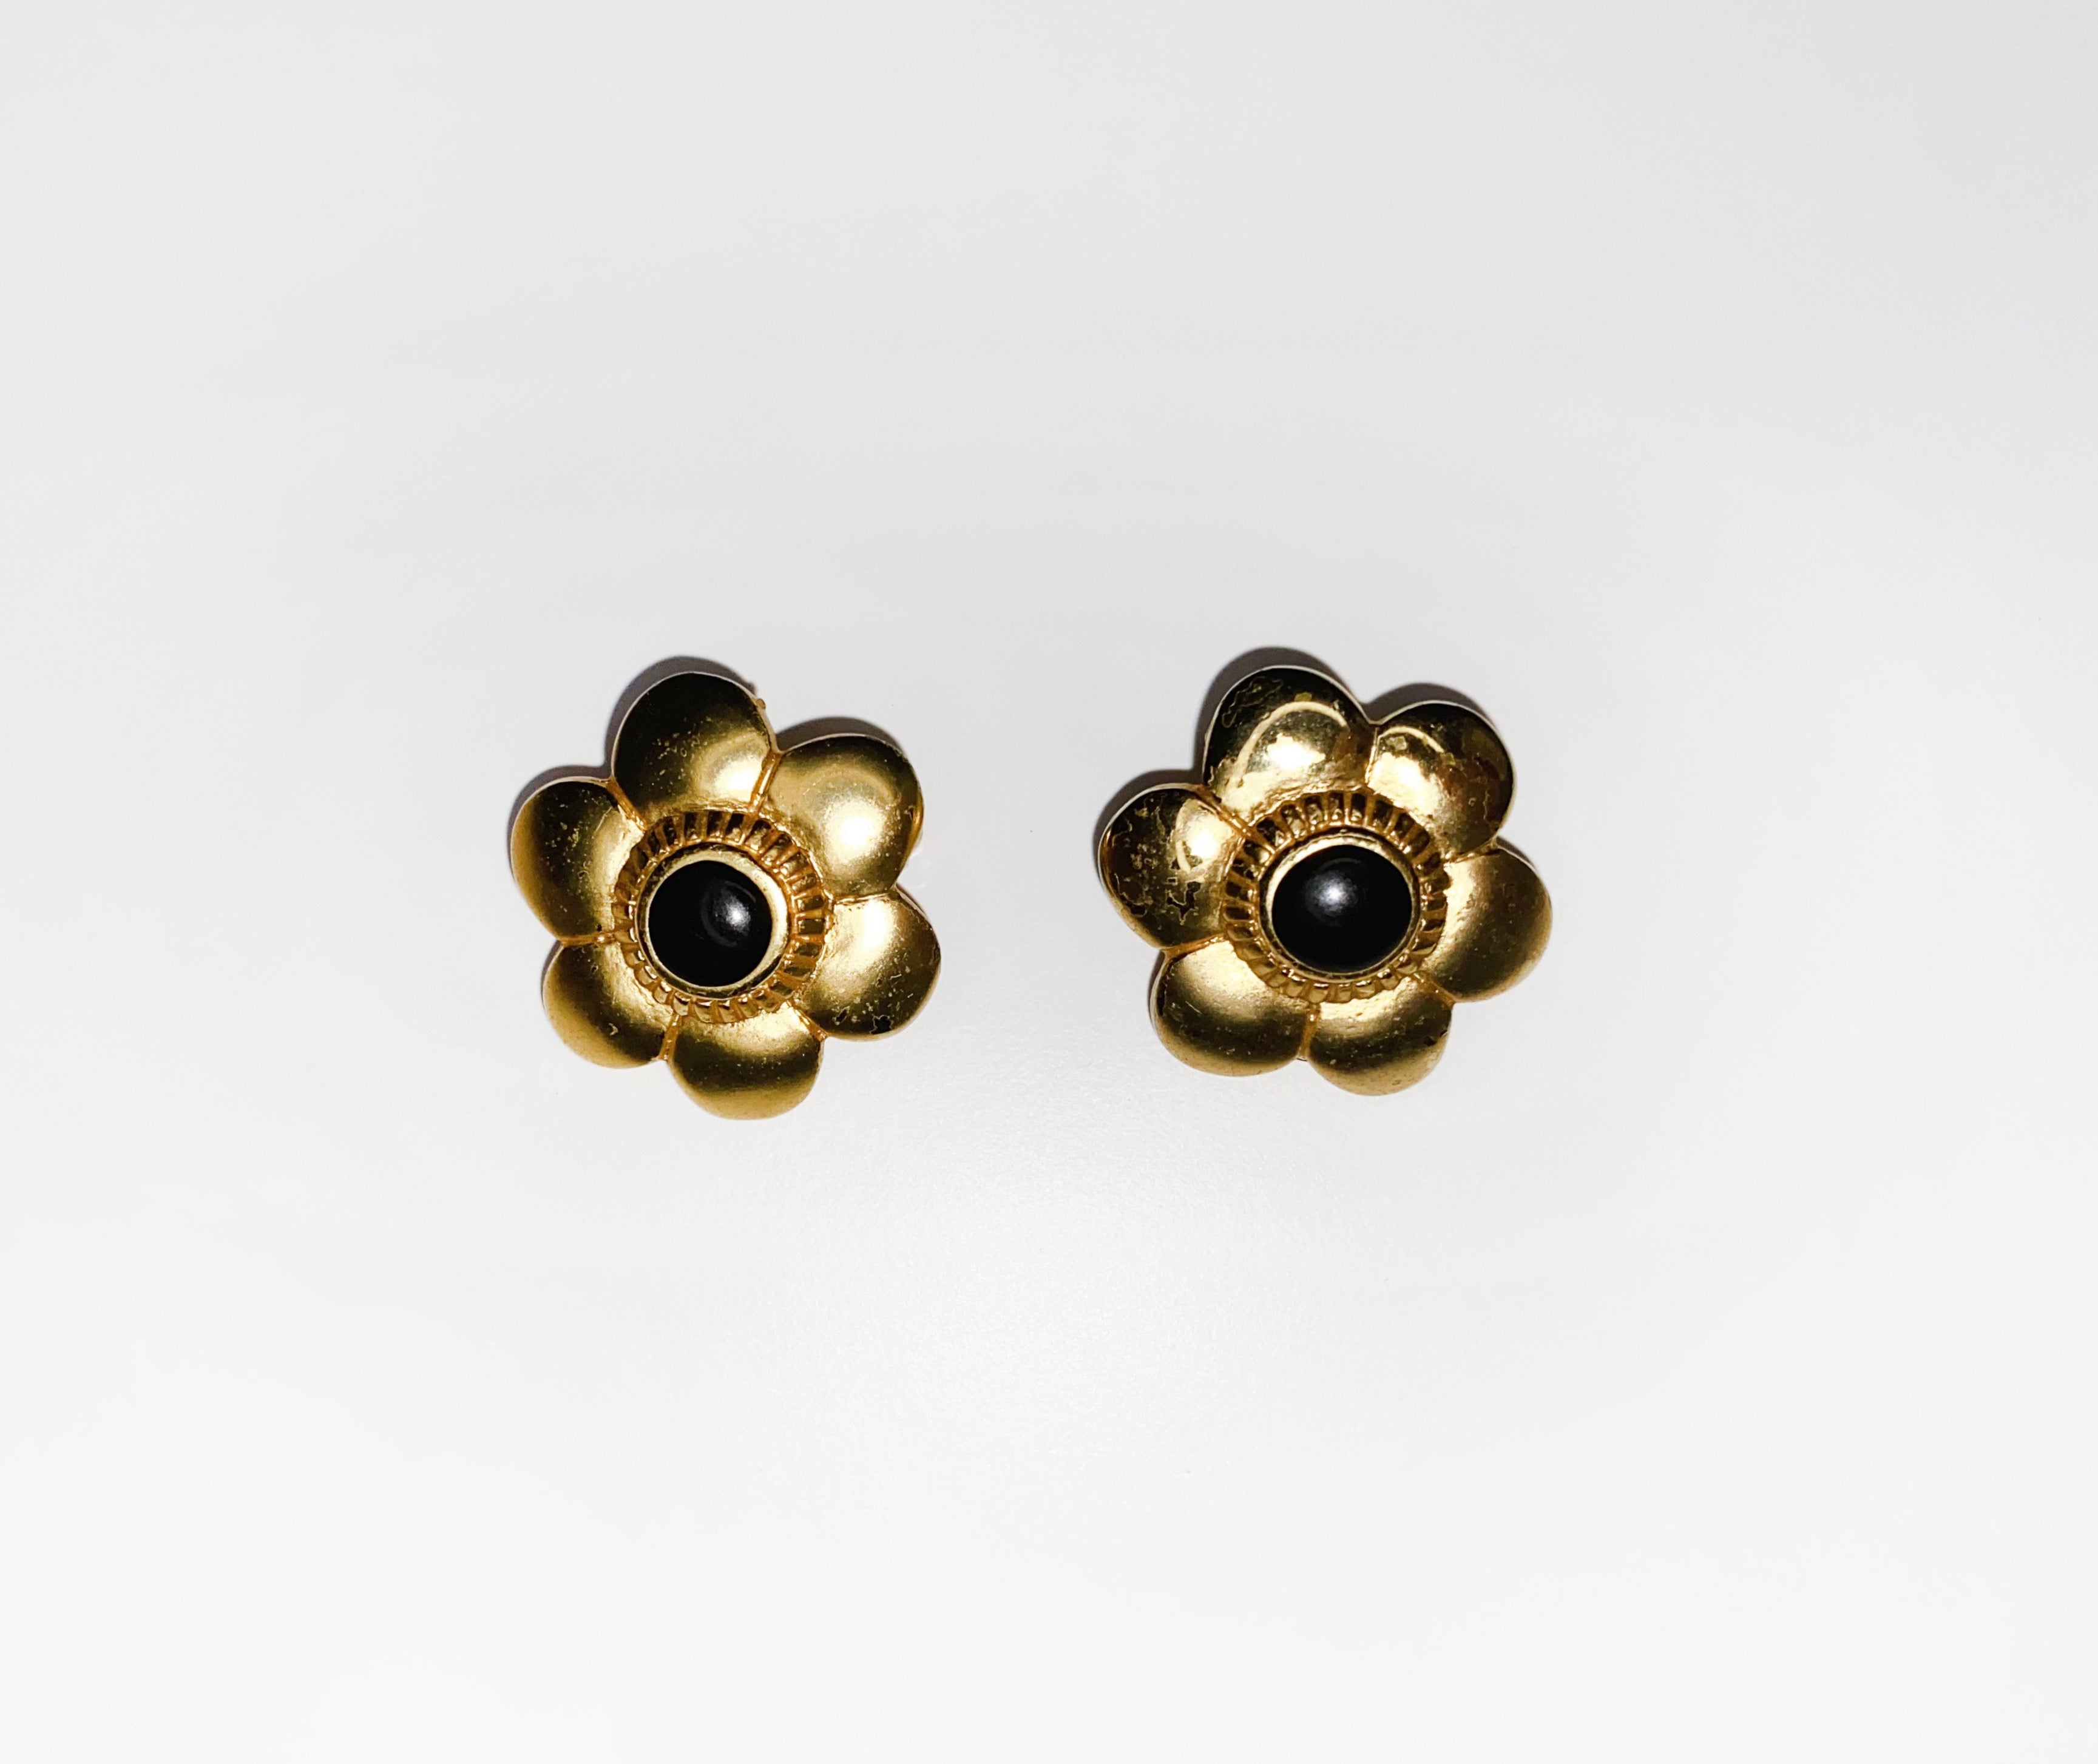 Flower Clip Earrings